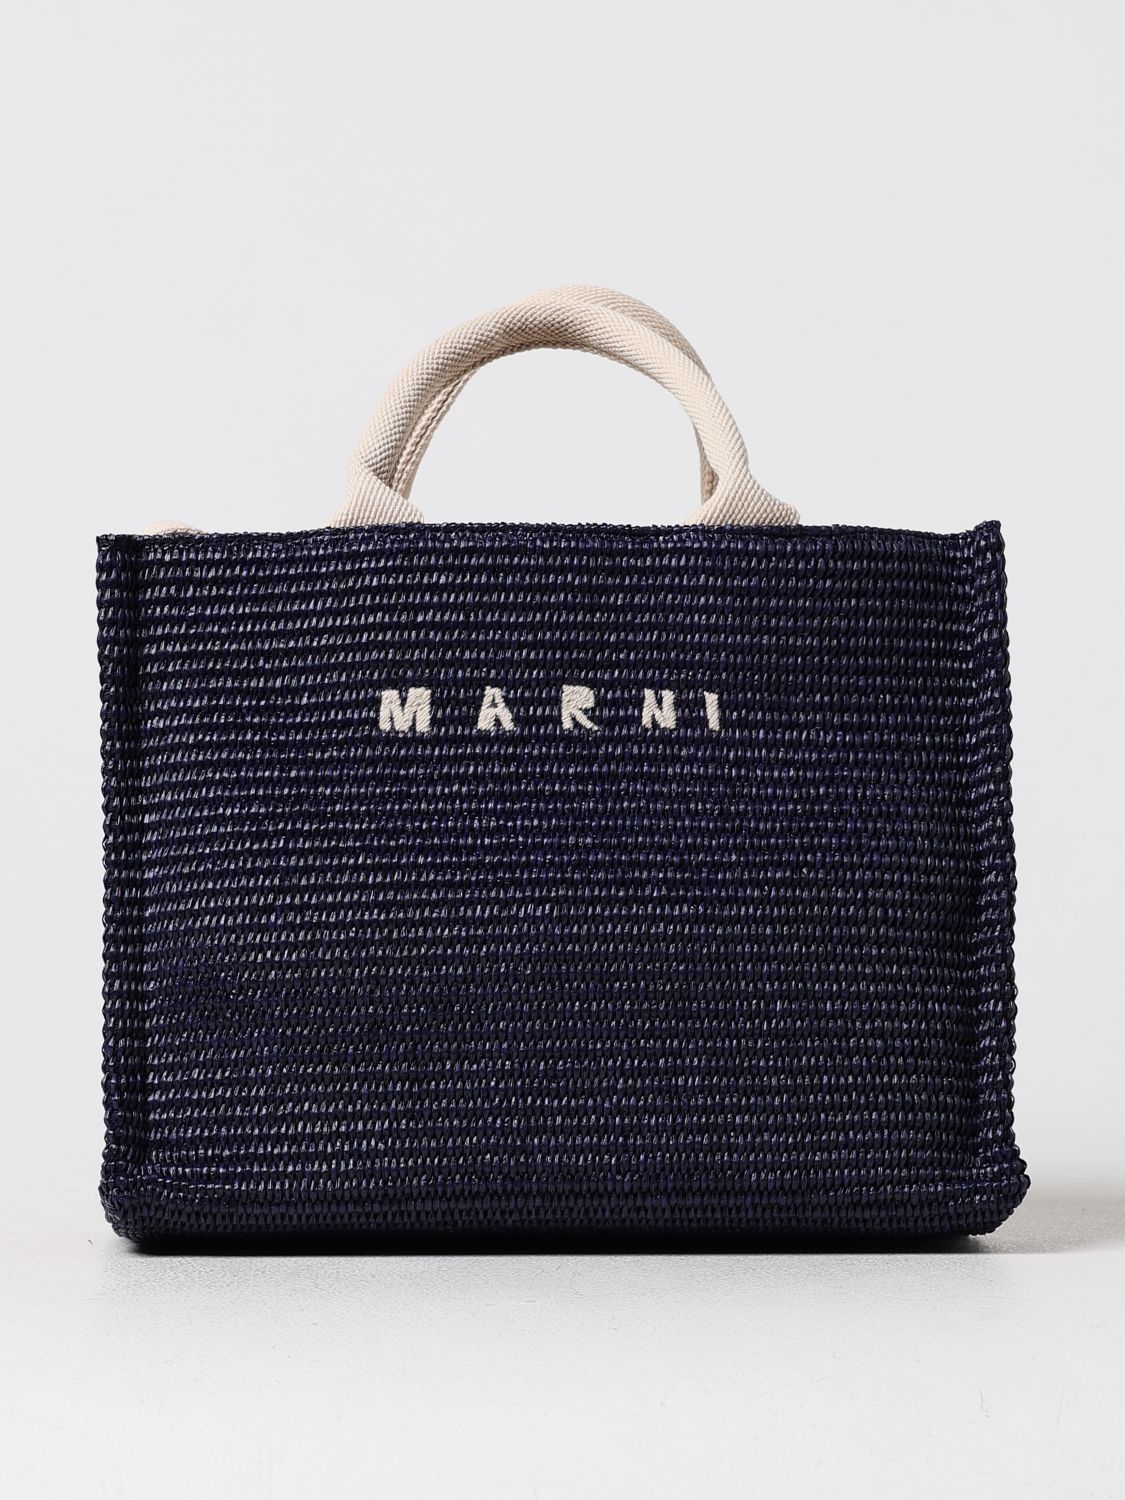 Marni Handbag MARNI Woman color Blue